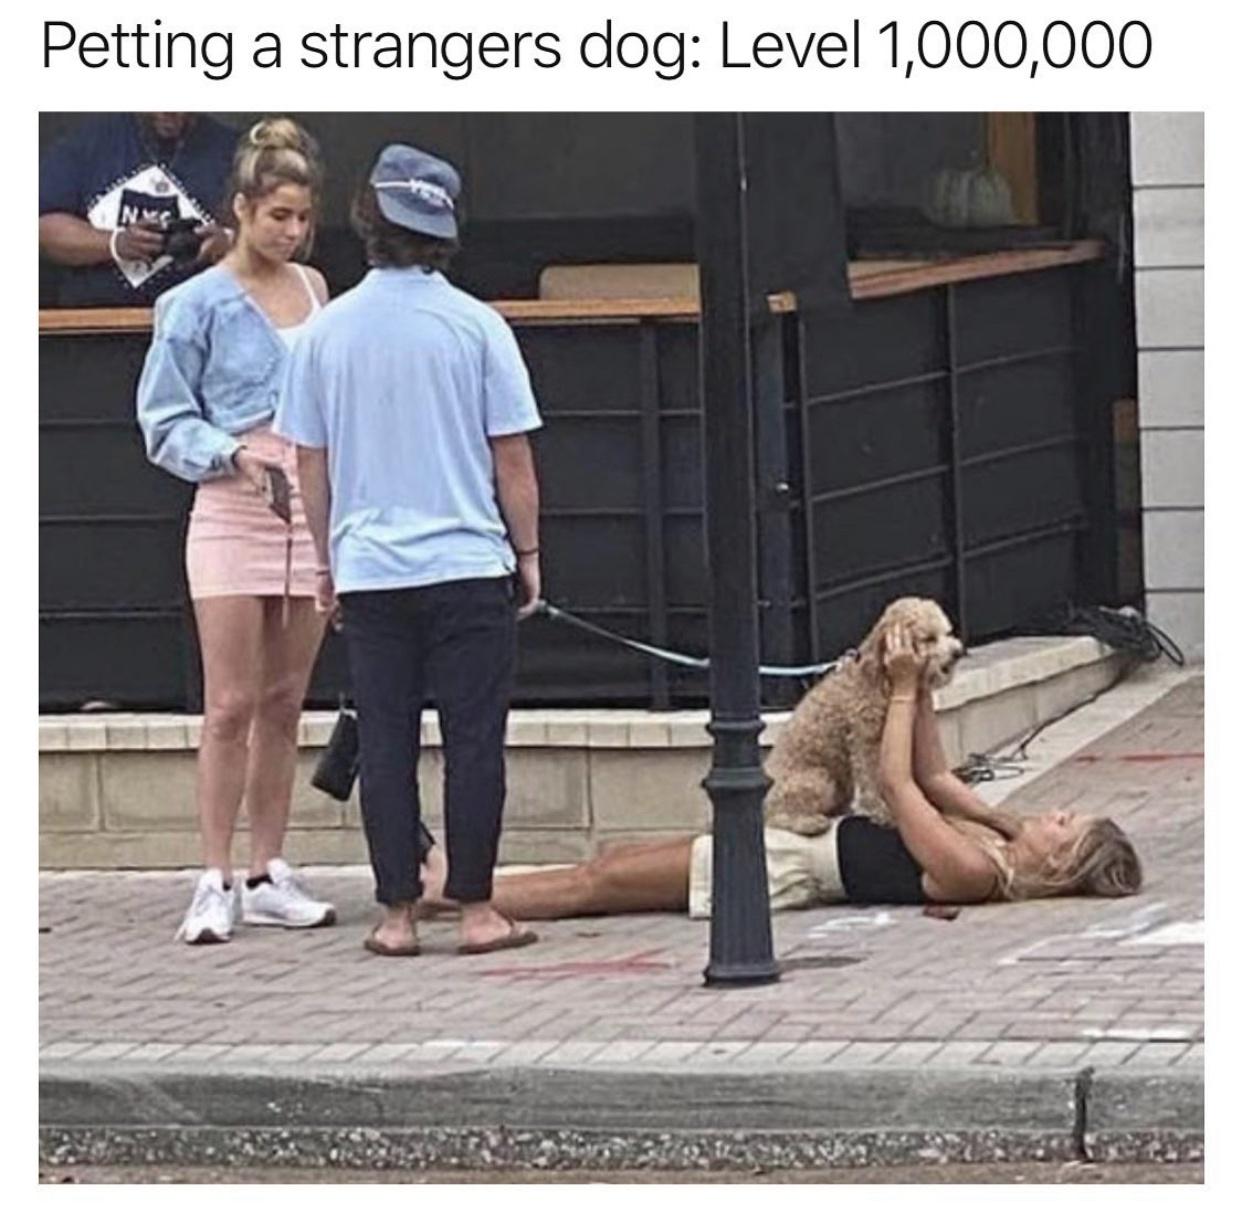 photo caption - Petting a strangers dog Level 1,000,000